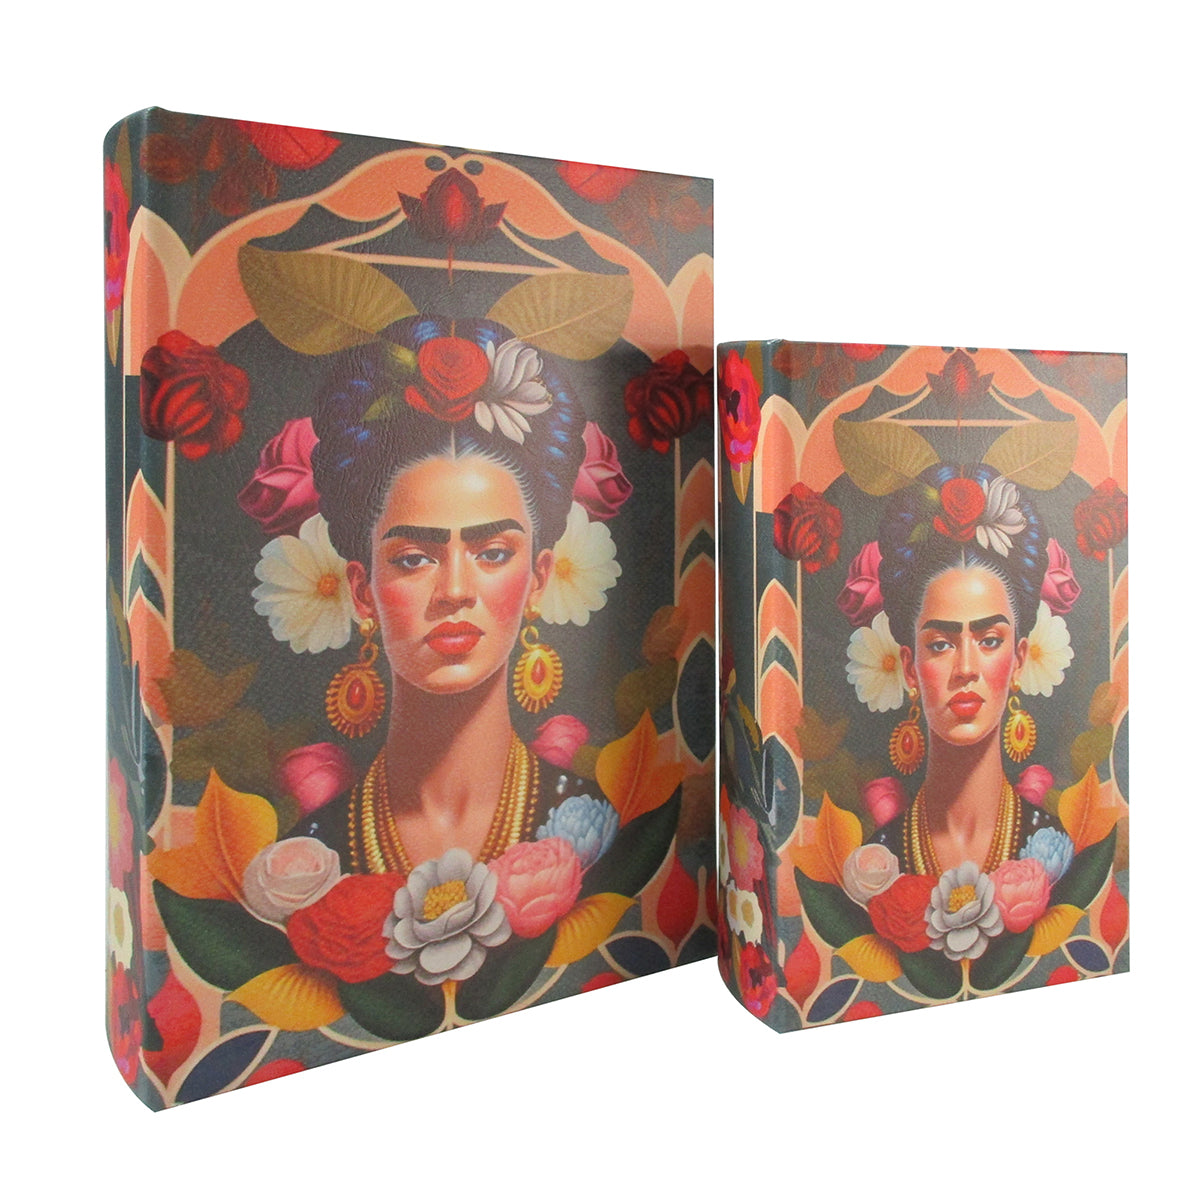 S/2 Caja Libro Frida